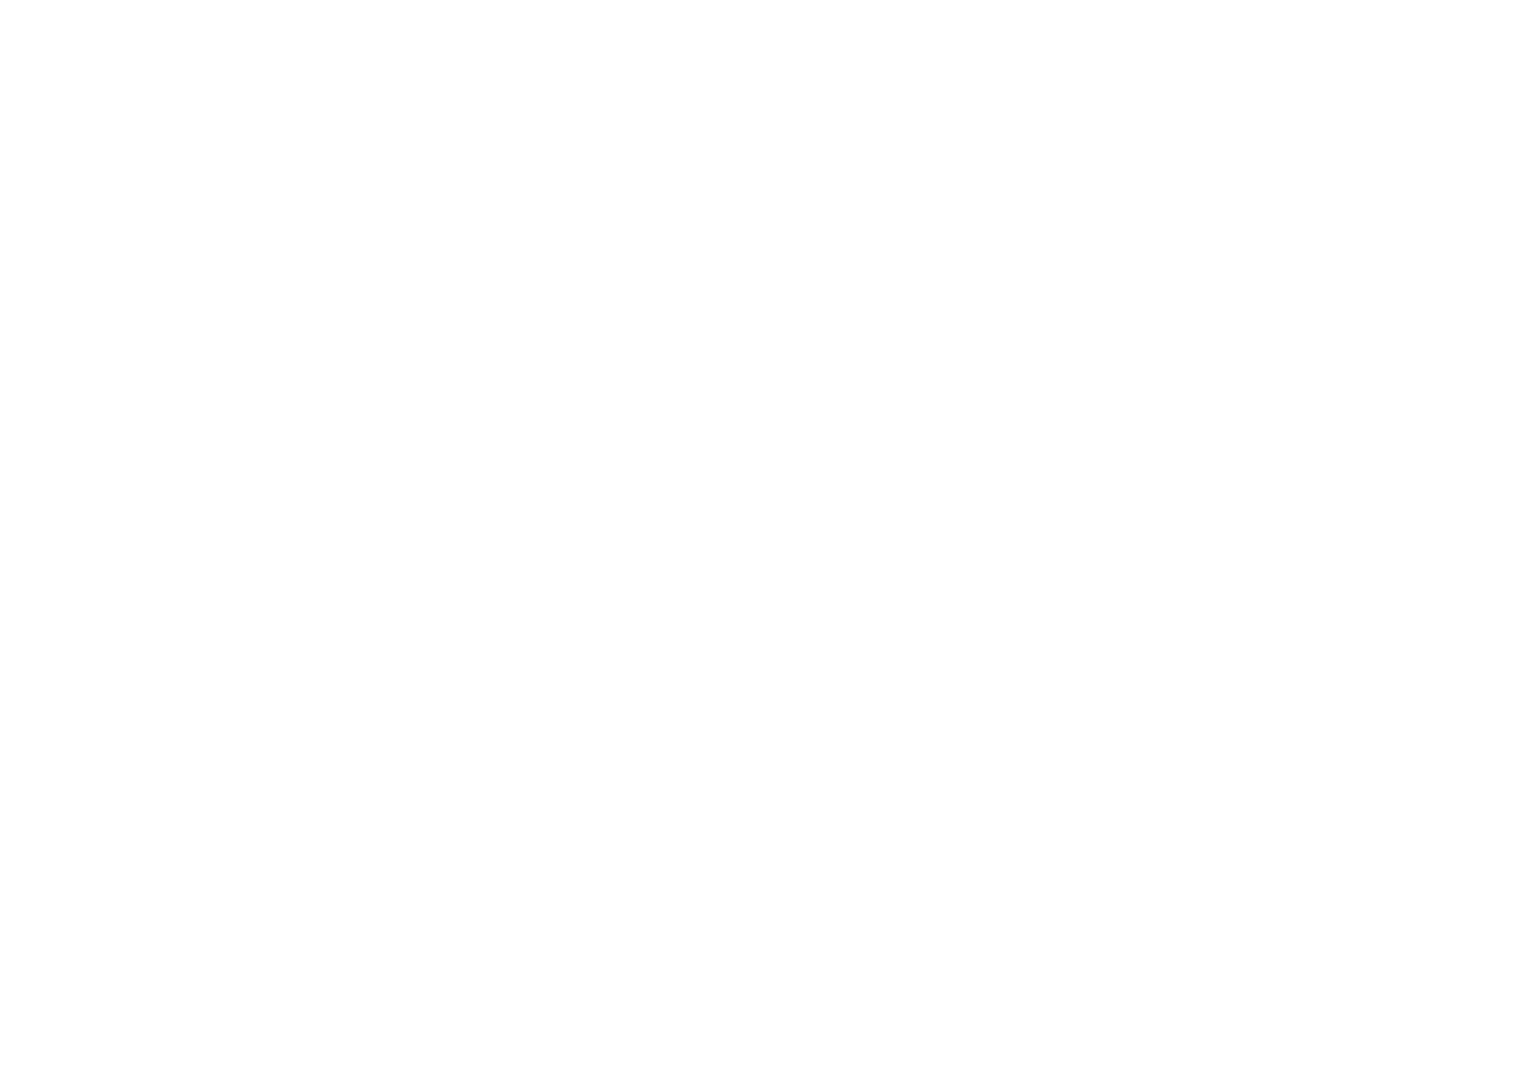 Geopark logo for dark backgrounds (transparent PNG)